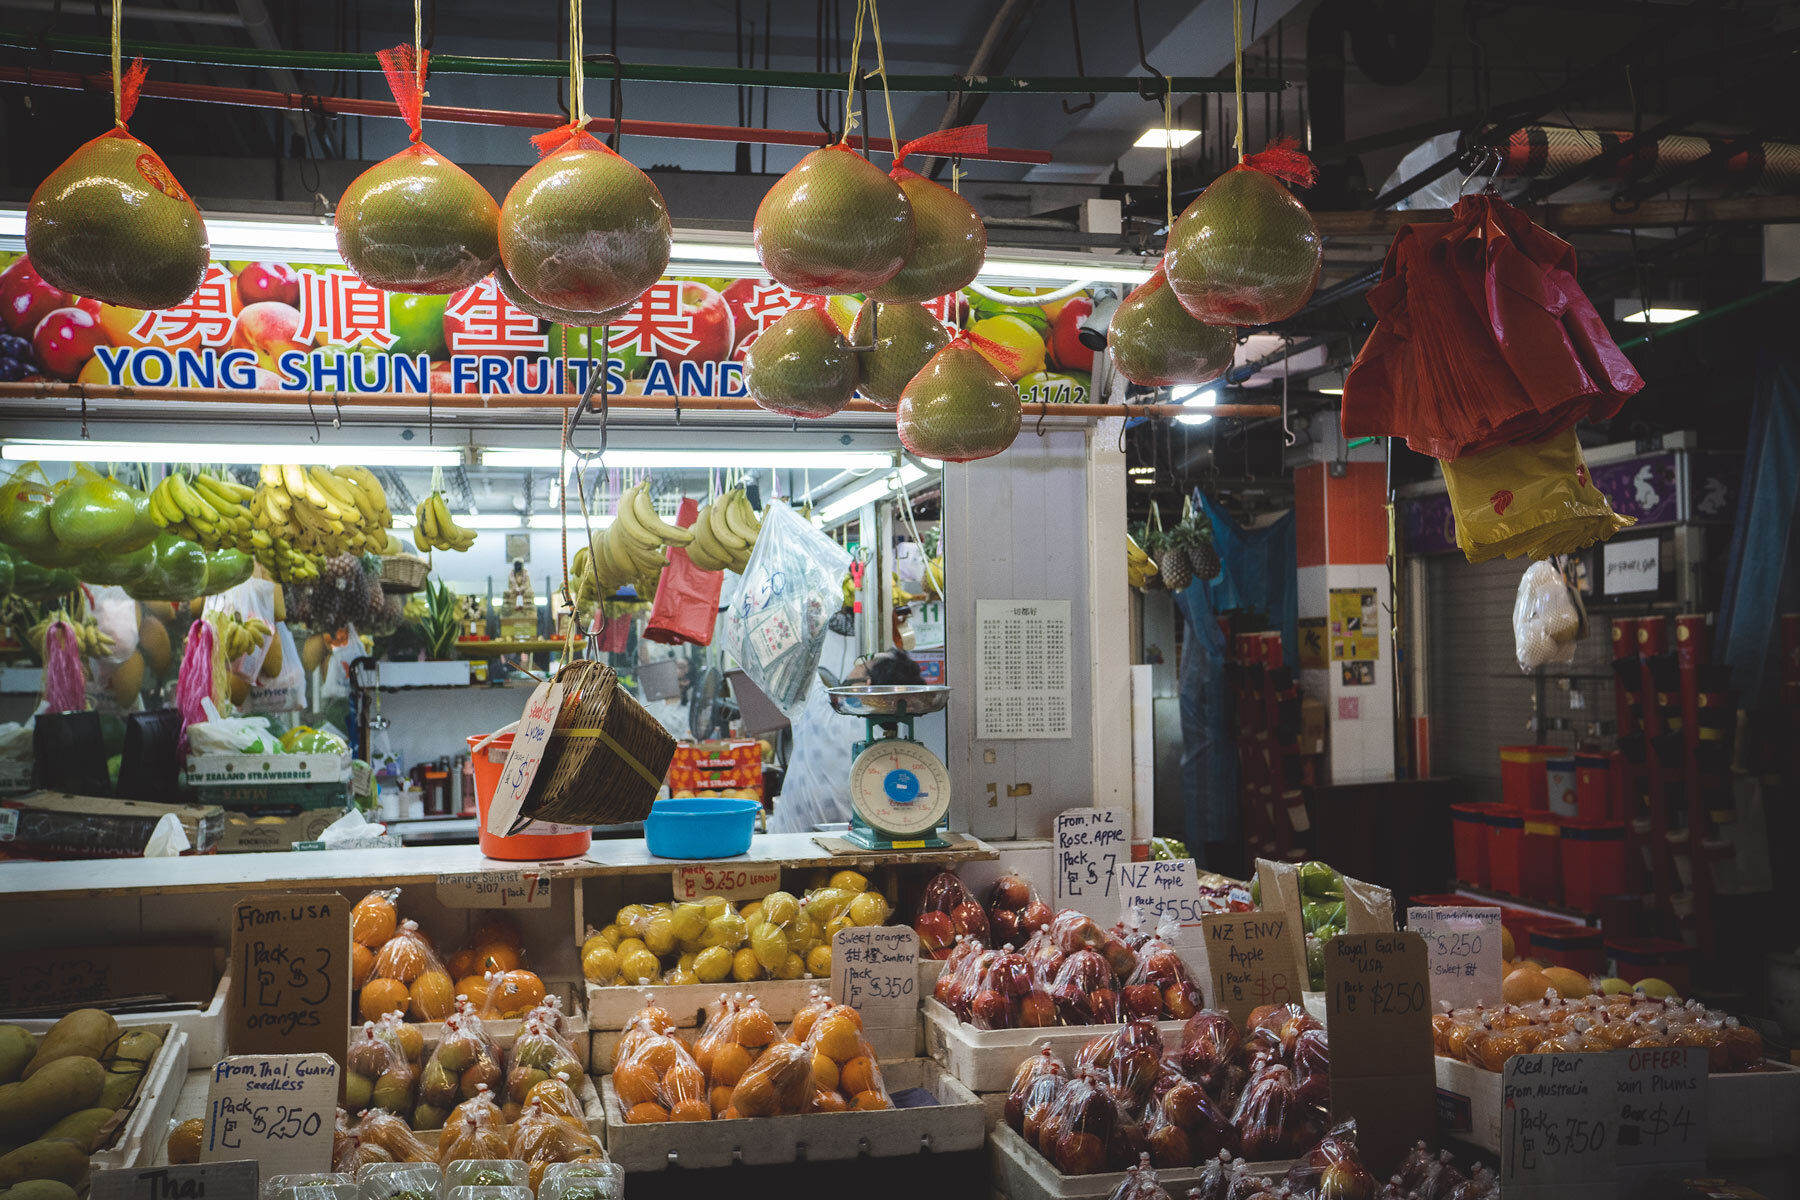 Ein Wet-Market, in dem es frisches Obst und Gemüse zu günstigen Preisen gibt.